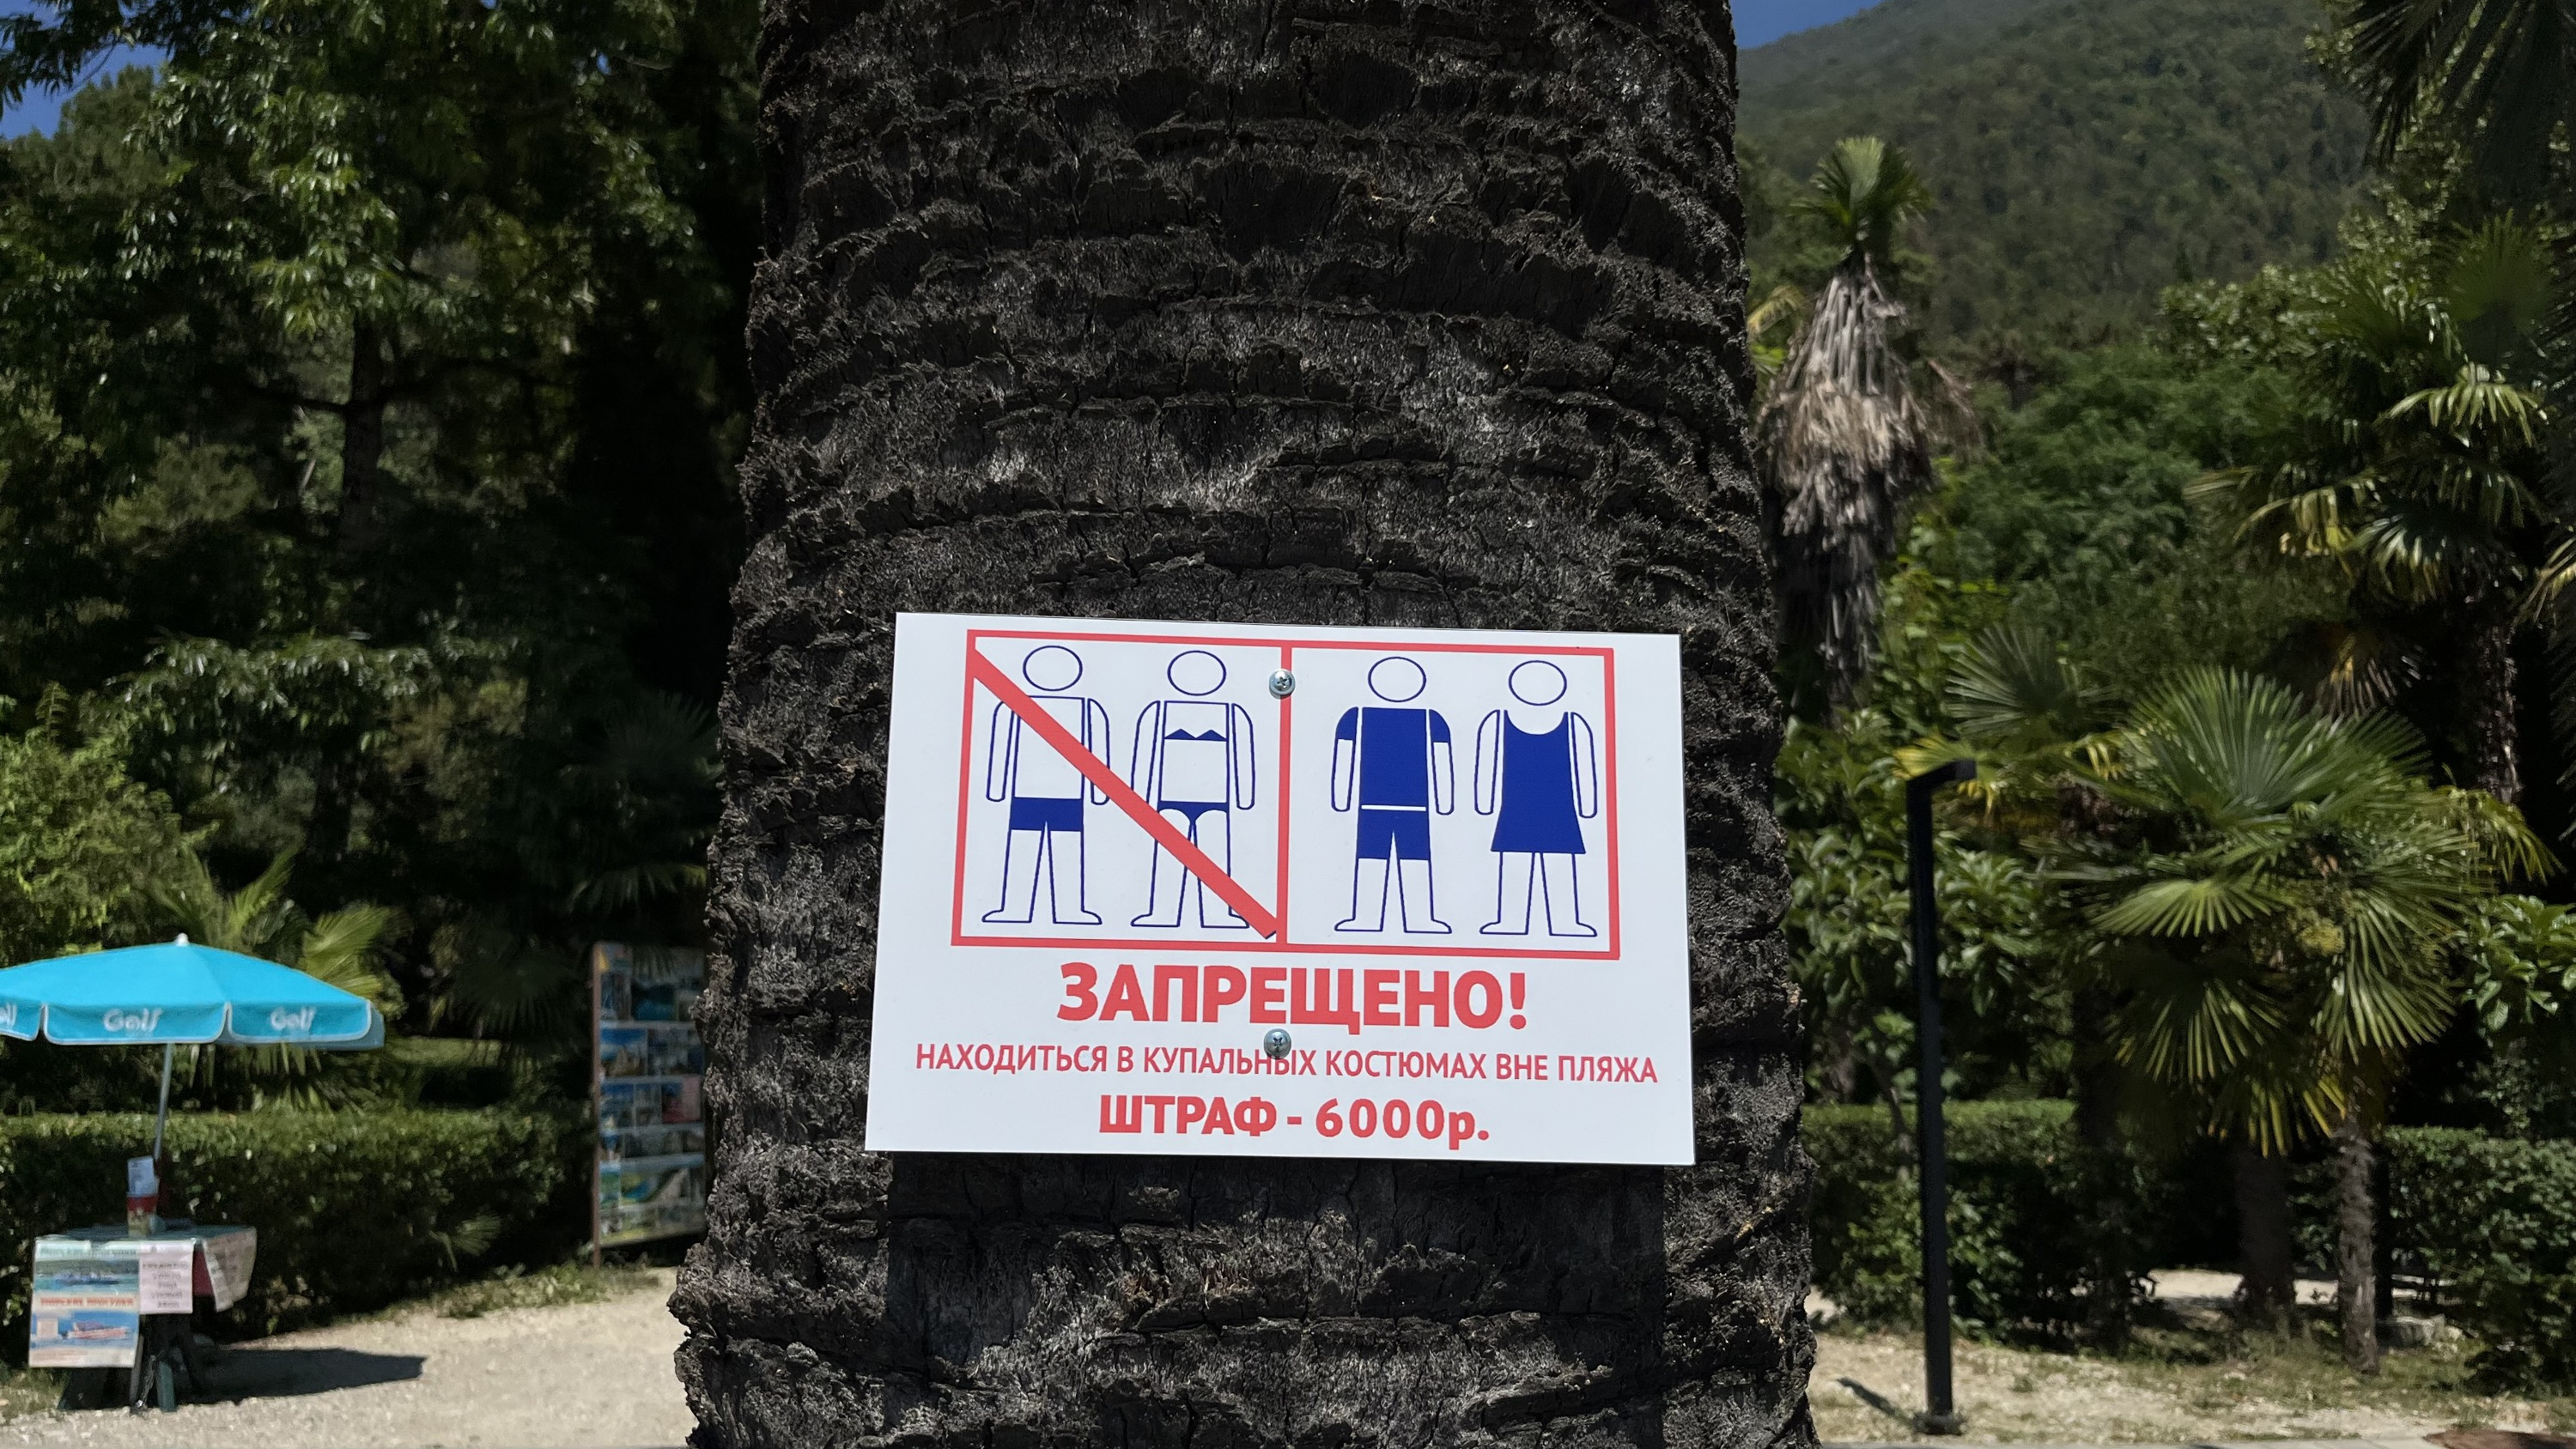 Не только одели, но и «обули». Российские туристы рассказали, как их штрафовали в Абхазии за «непотребный внешний вид»